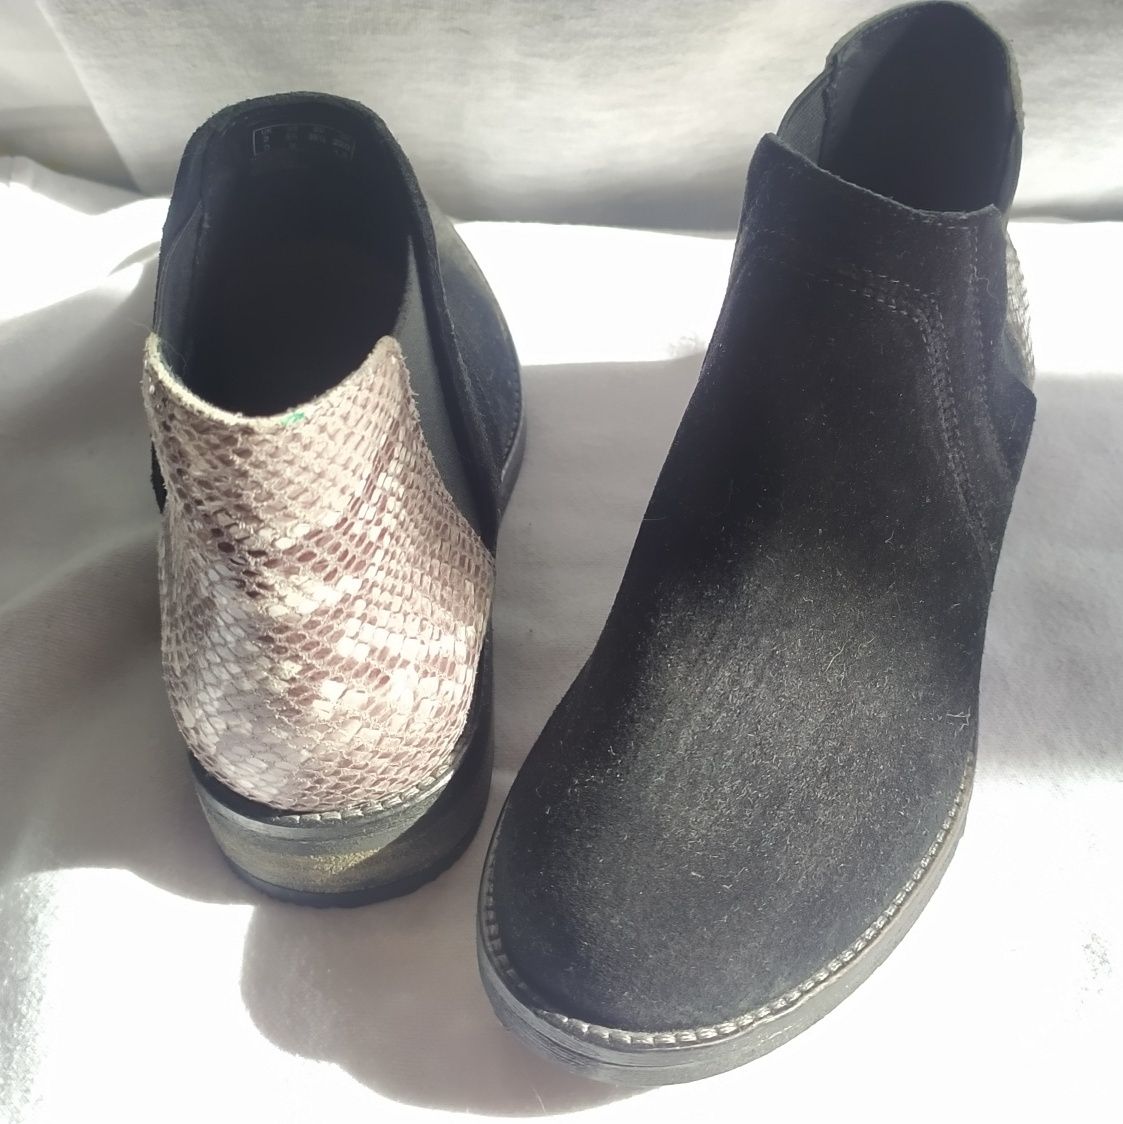 Натуральные ботинки - Clarks 
материал: натуральная замша в комбинации